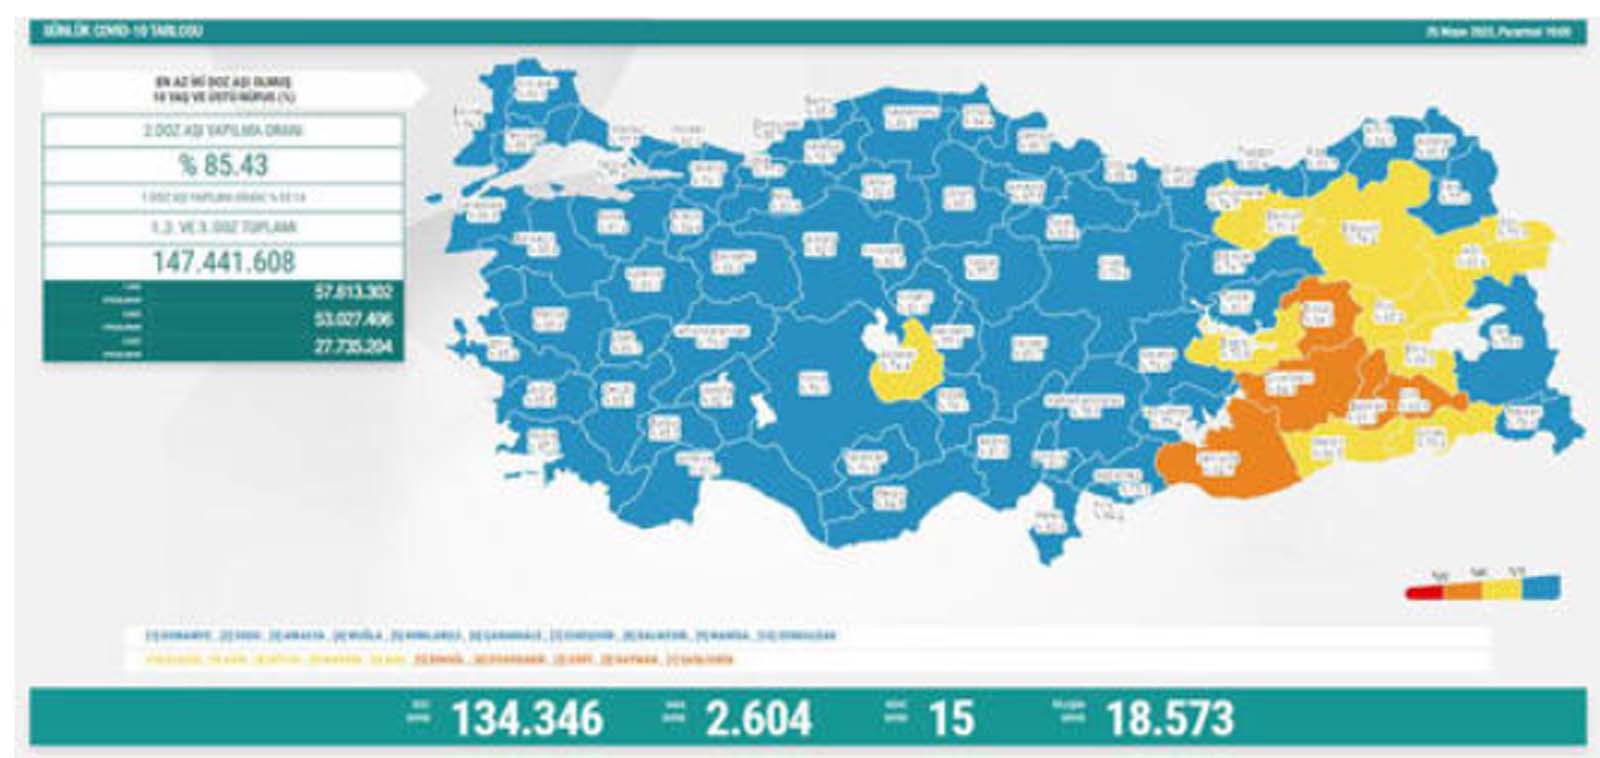 Son dakika: 29 Nisan 2022 Cuma Türkiye Günlük Koronavirüs Tablosu | Son 24 saat korona tablosu